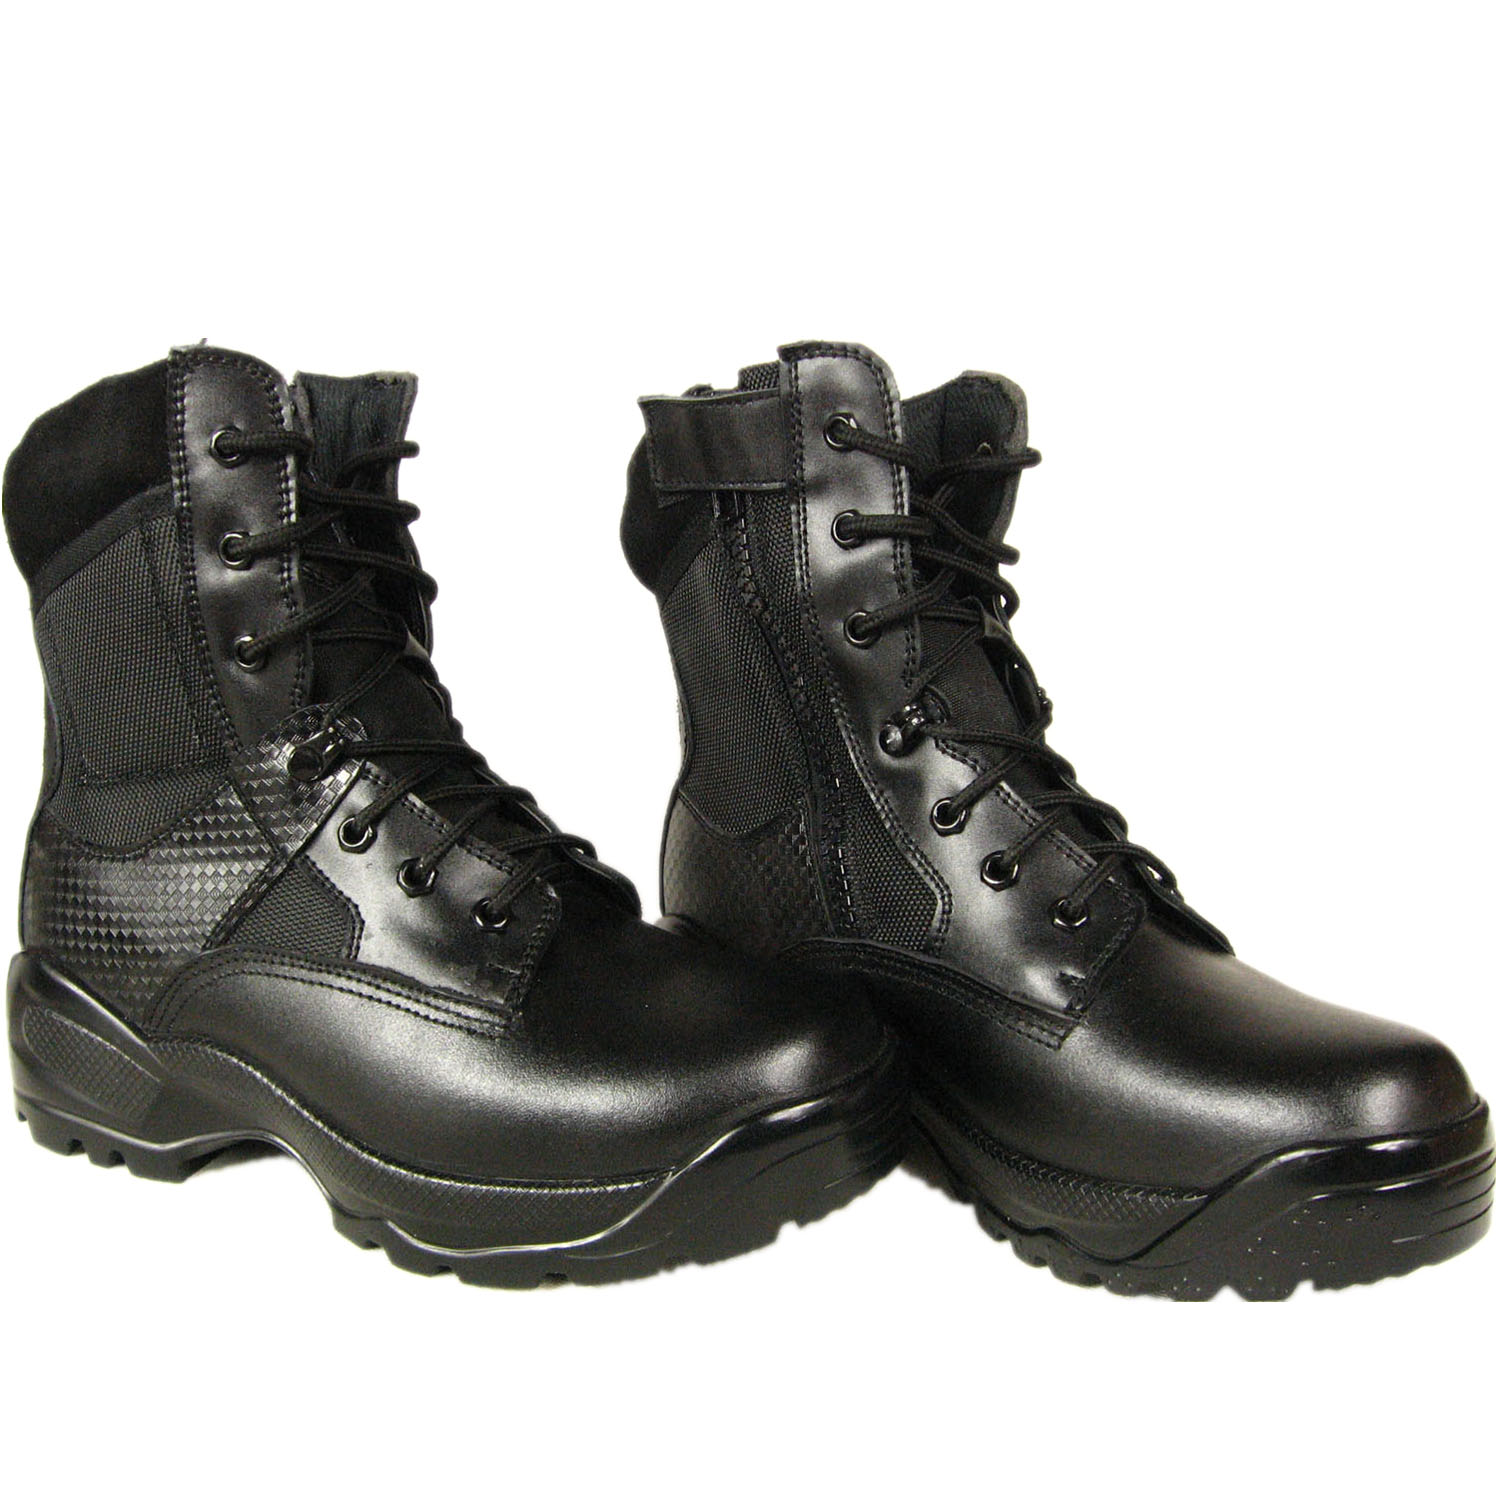 高端军警作战靴——君洛克R23021 多功能特种作战靴